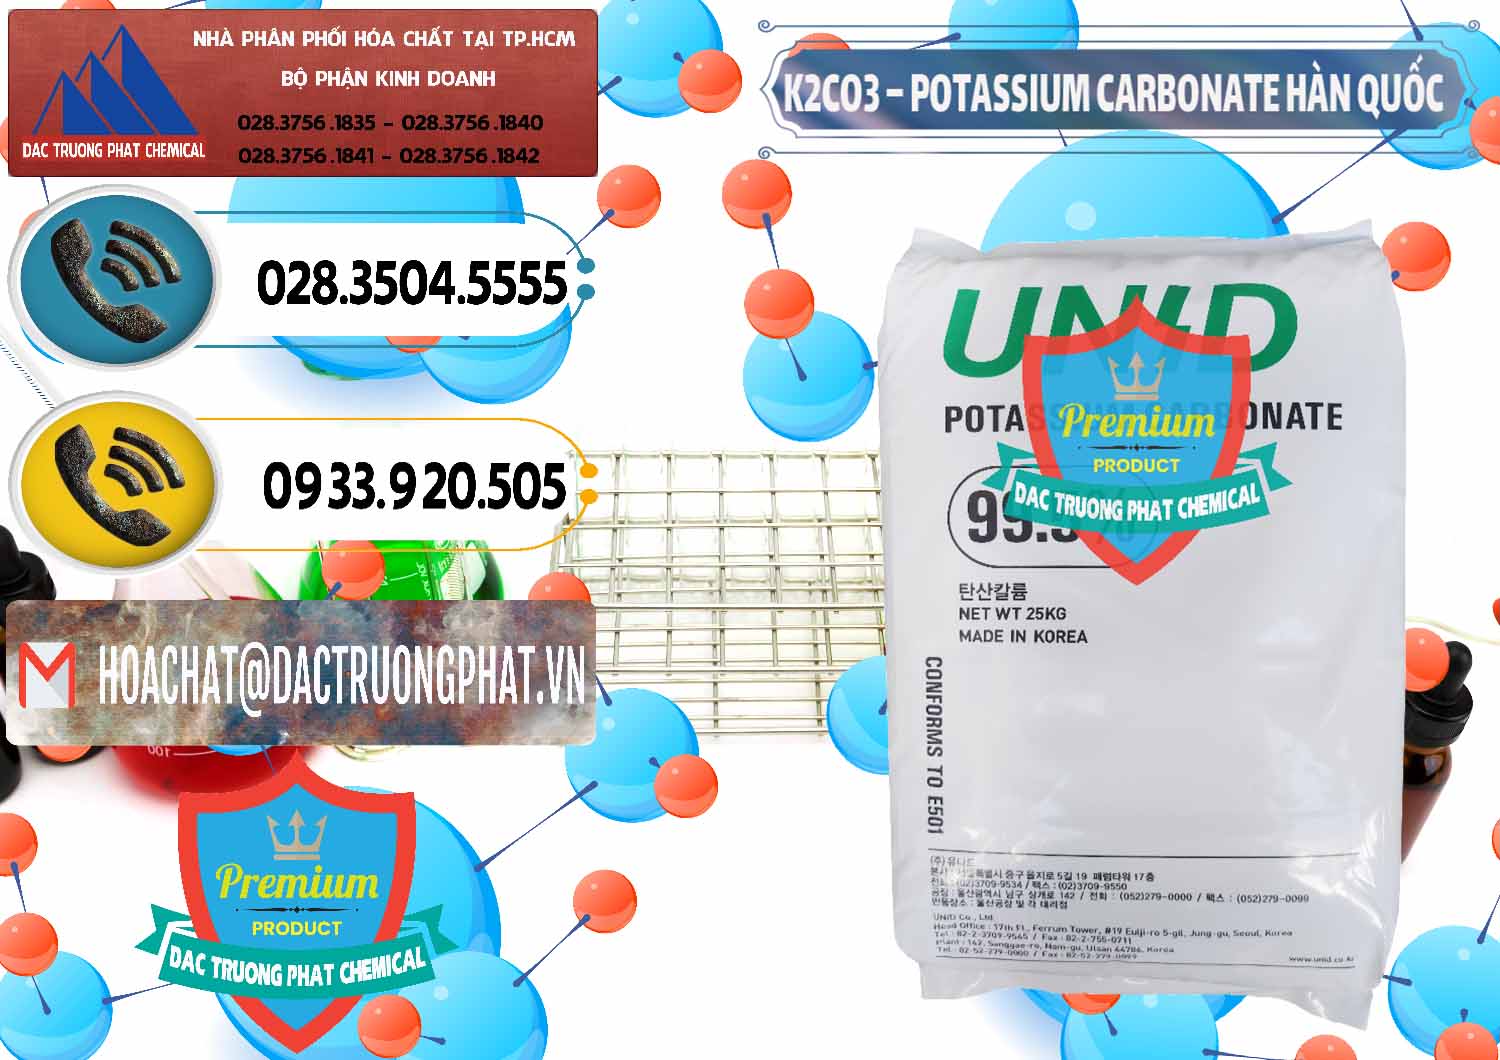 Nơi chuyên bán & cung cấp K2Co3 – Potassium Carbonate Unid Hàn Quốc Korea - 0081 - Nơi phân phối và kinh doanh hóa chất tại TP.HCM - hoachatdetnhuom.vn